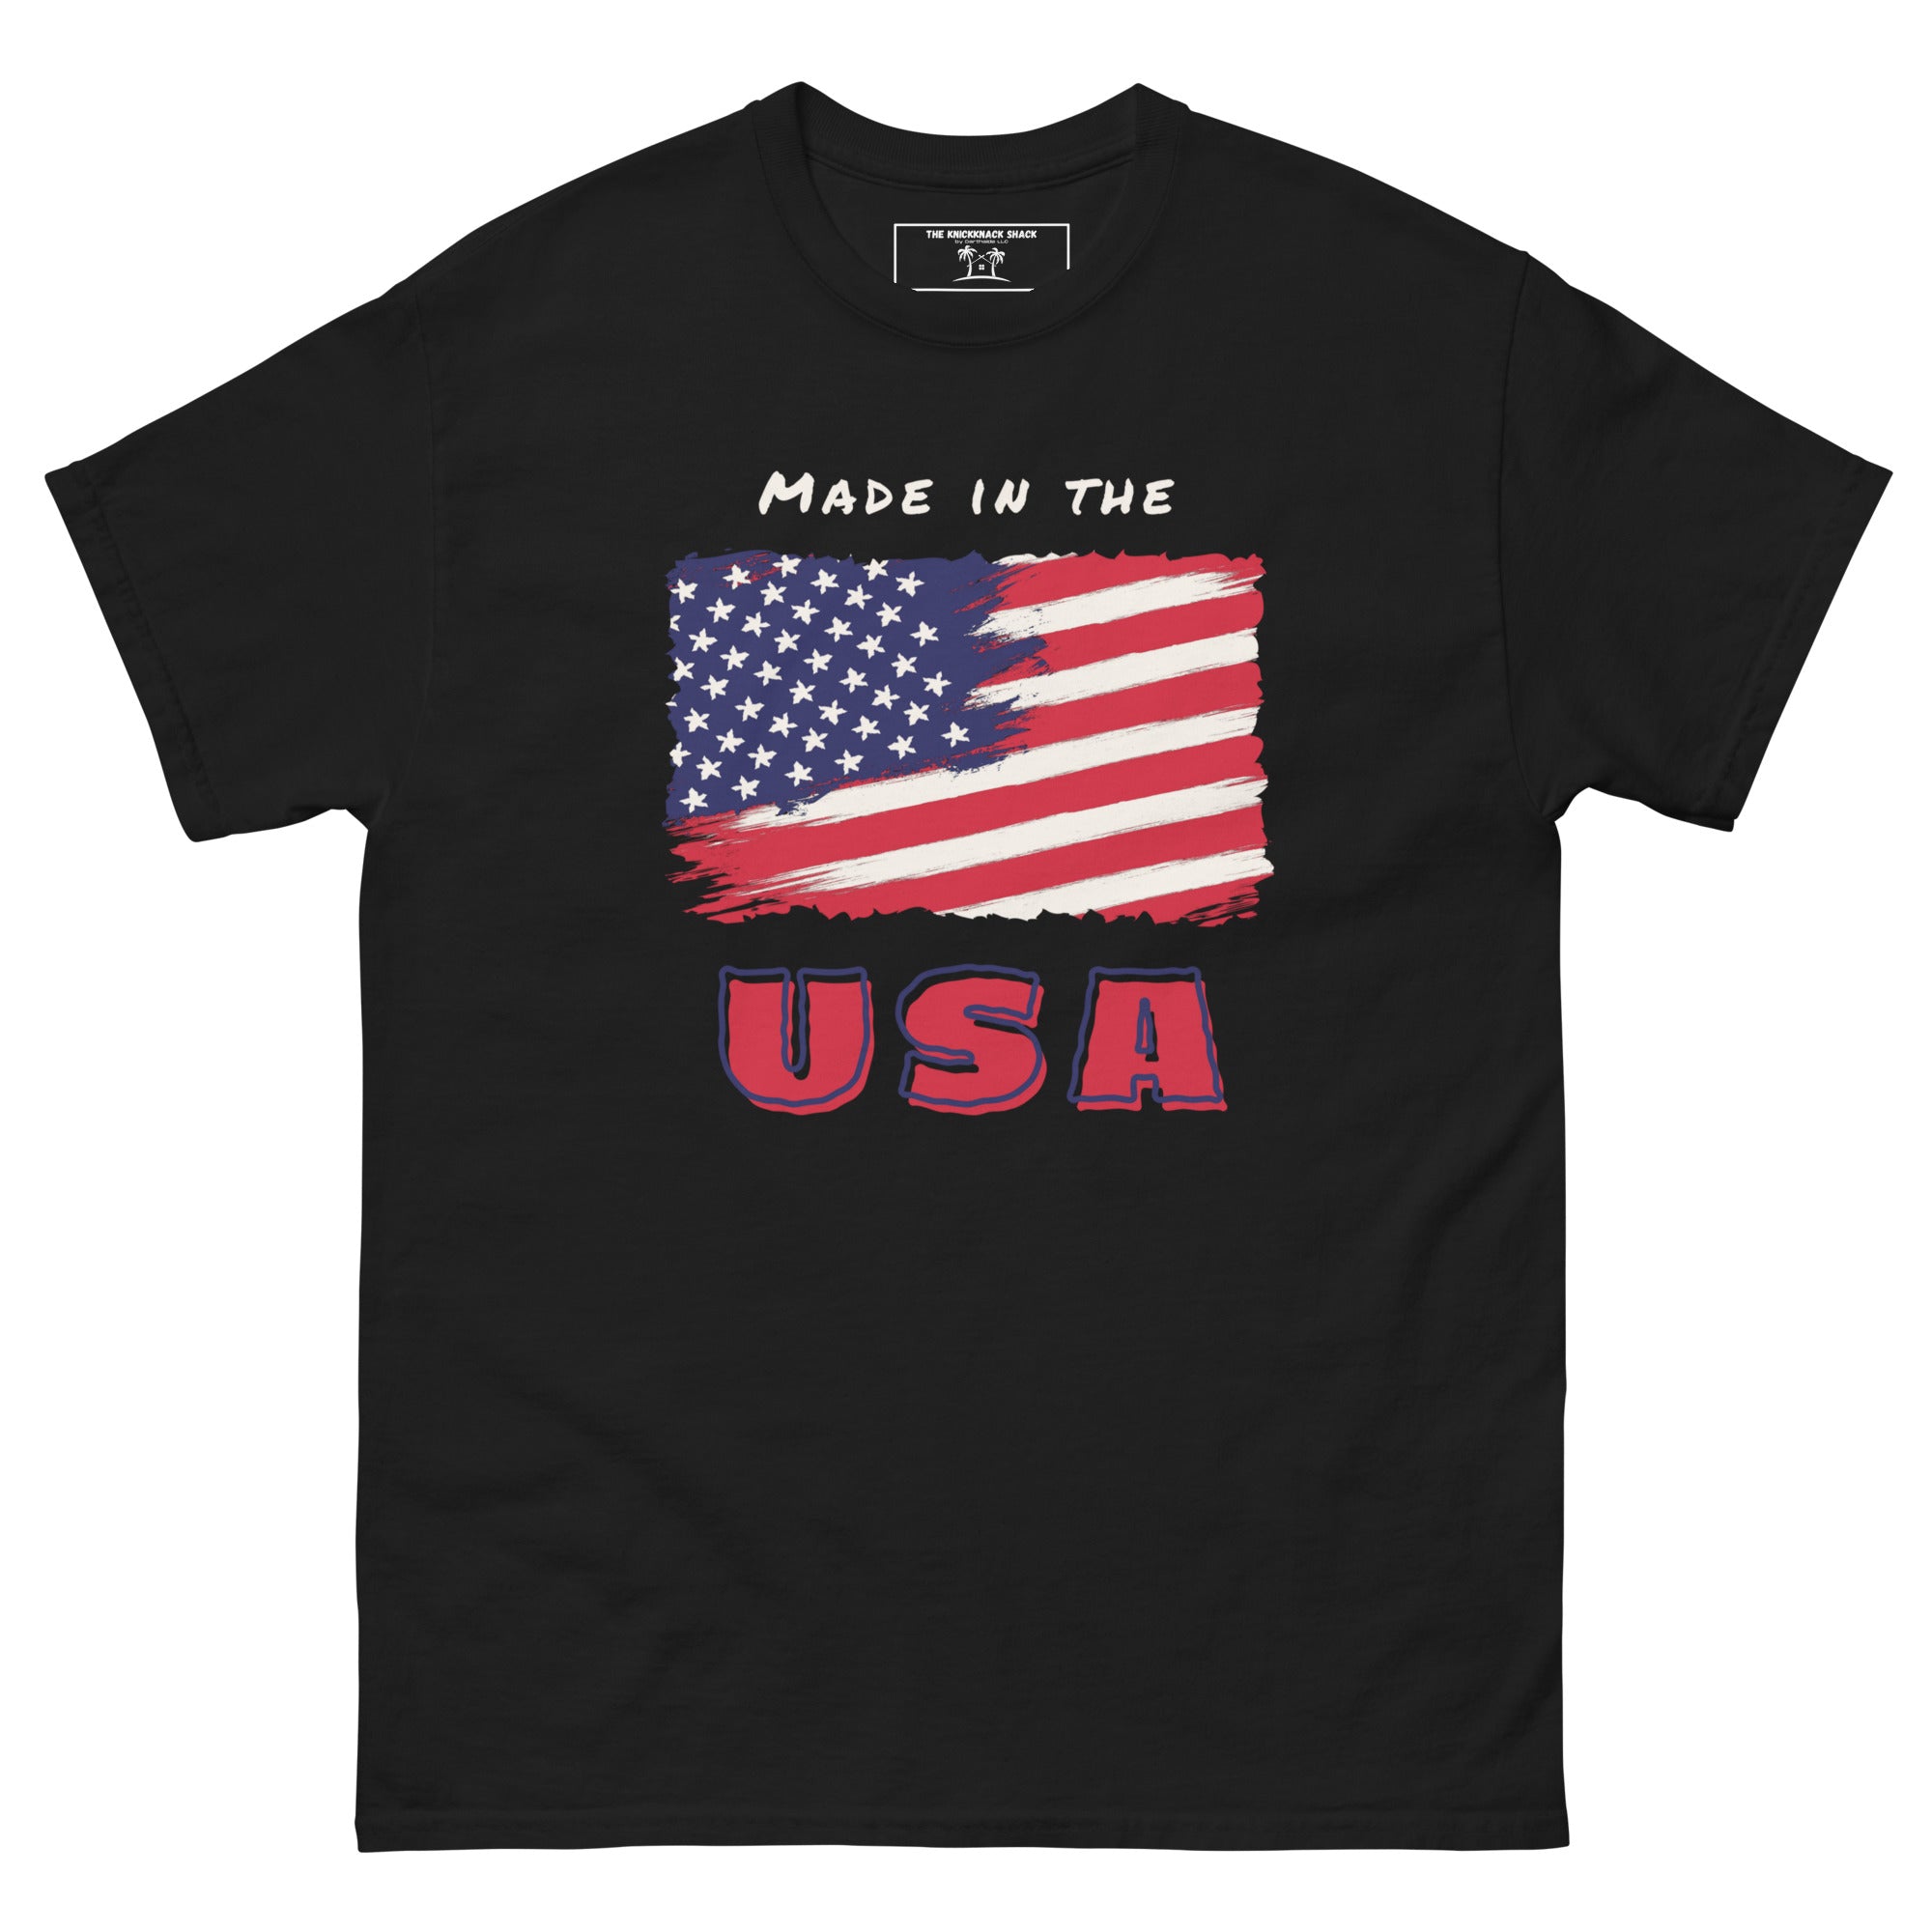 Tee-shirt classique - Fabriqué aux États-Unis (couleurs foncées)